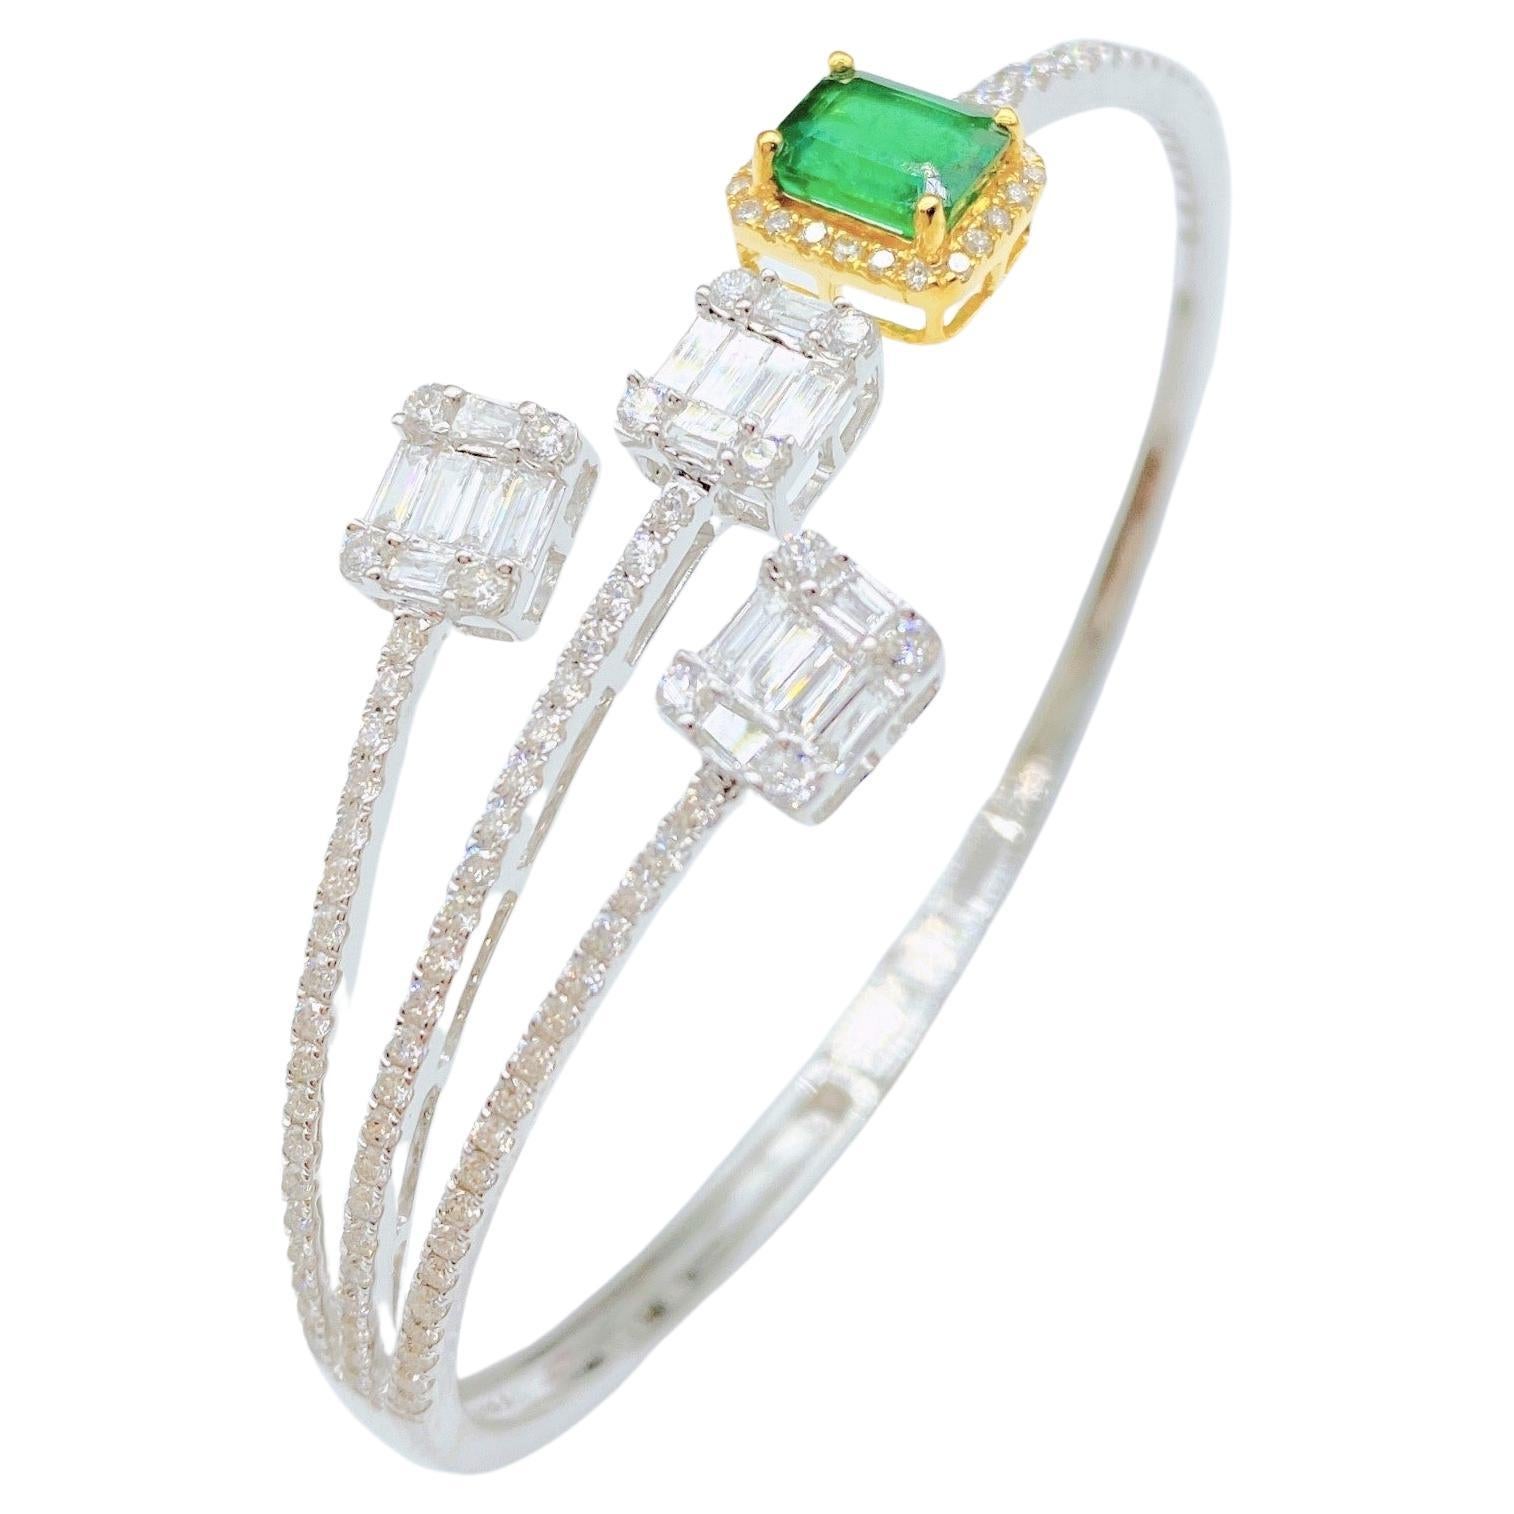 Bracelet jonc fantaisie en or 18 carats avec diamants et émeraudes vertes scintillantes 16 399 $, Neuf avec étiquette